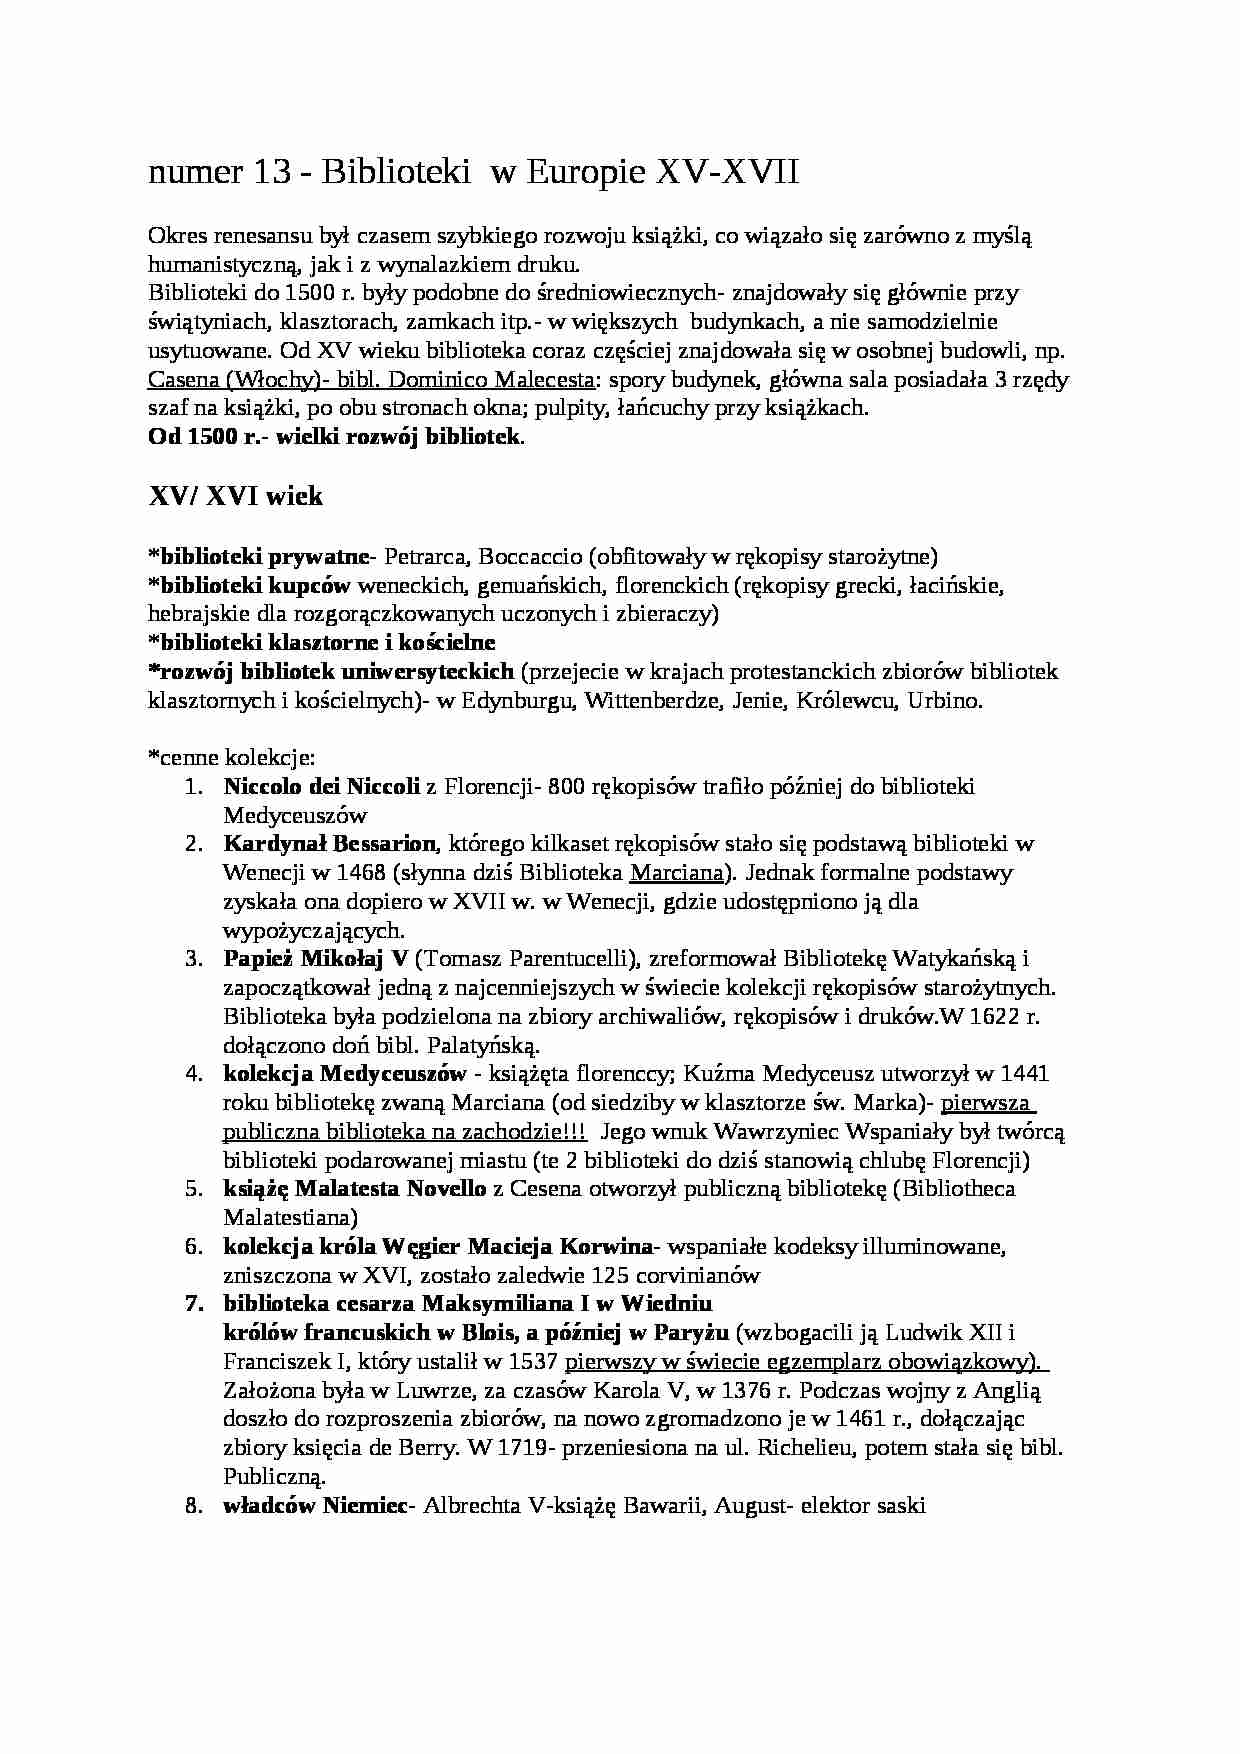 Biblioteki w Europie i w  Polsce XV- XVIII - Jan III Sobieski - strona 1